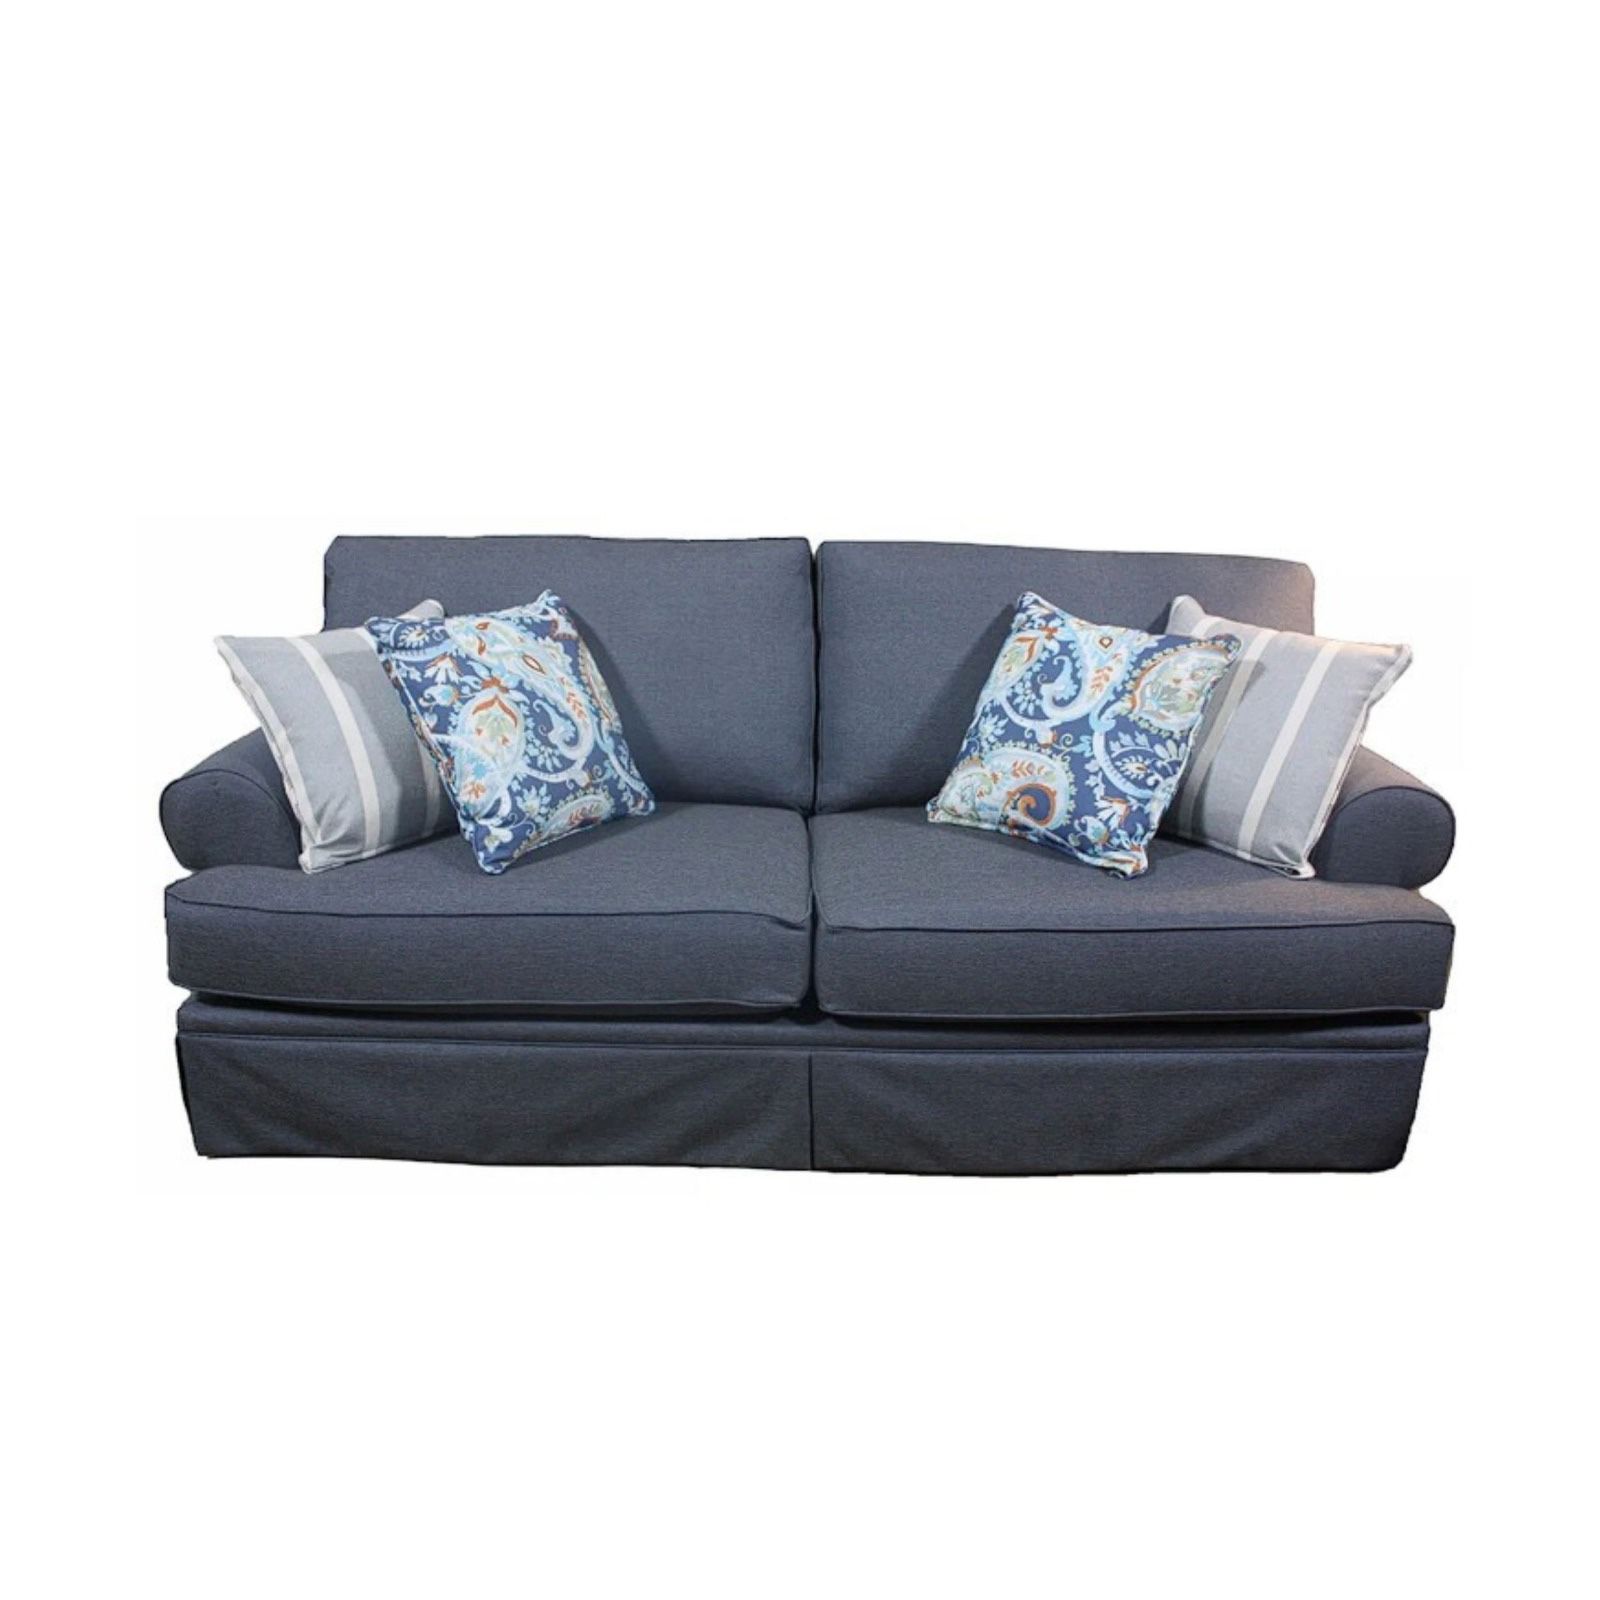 2 Cushion Sofa/Couch